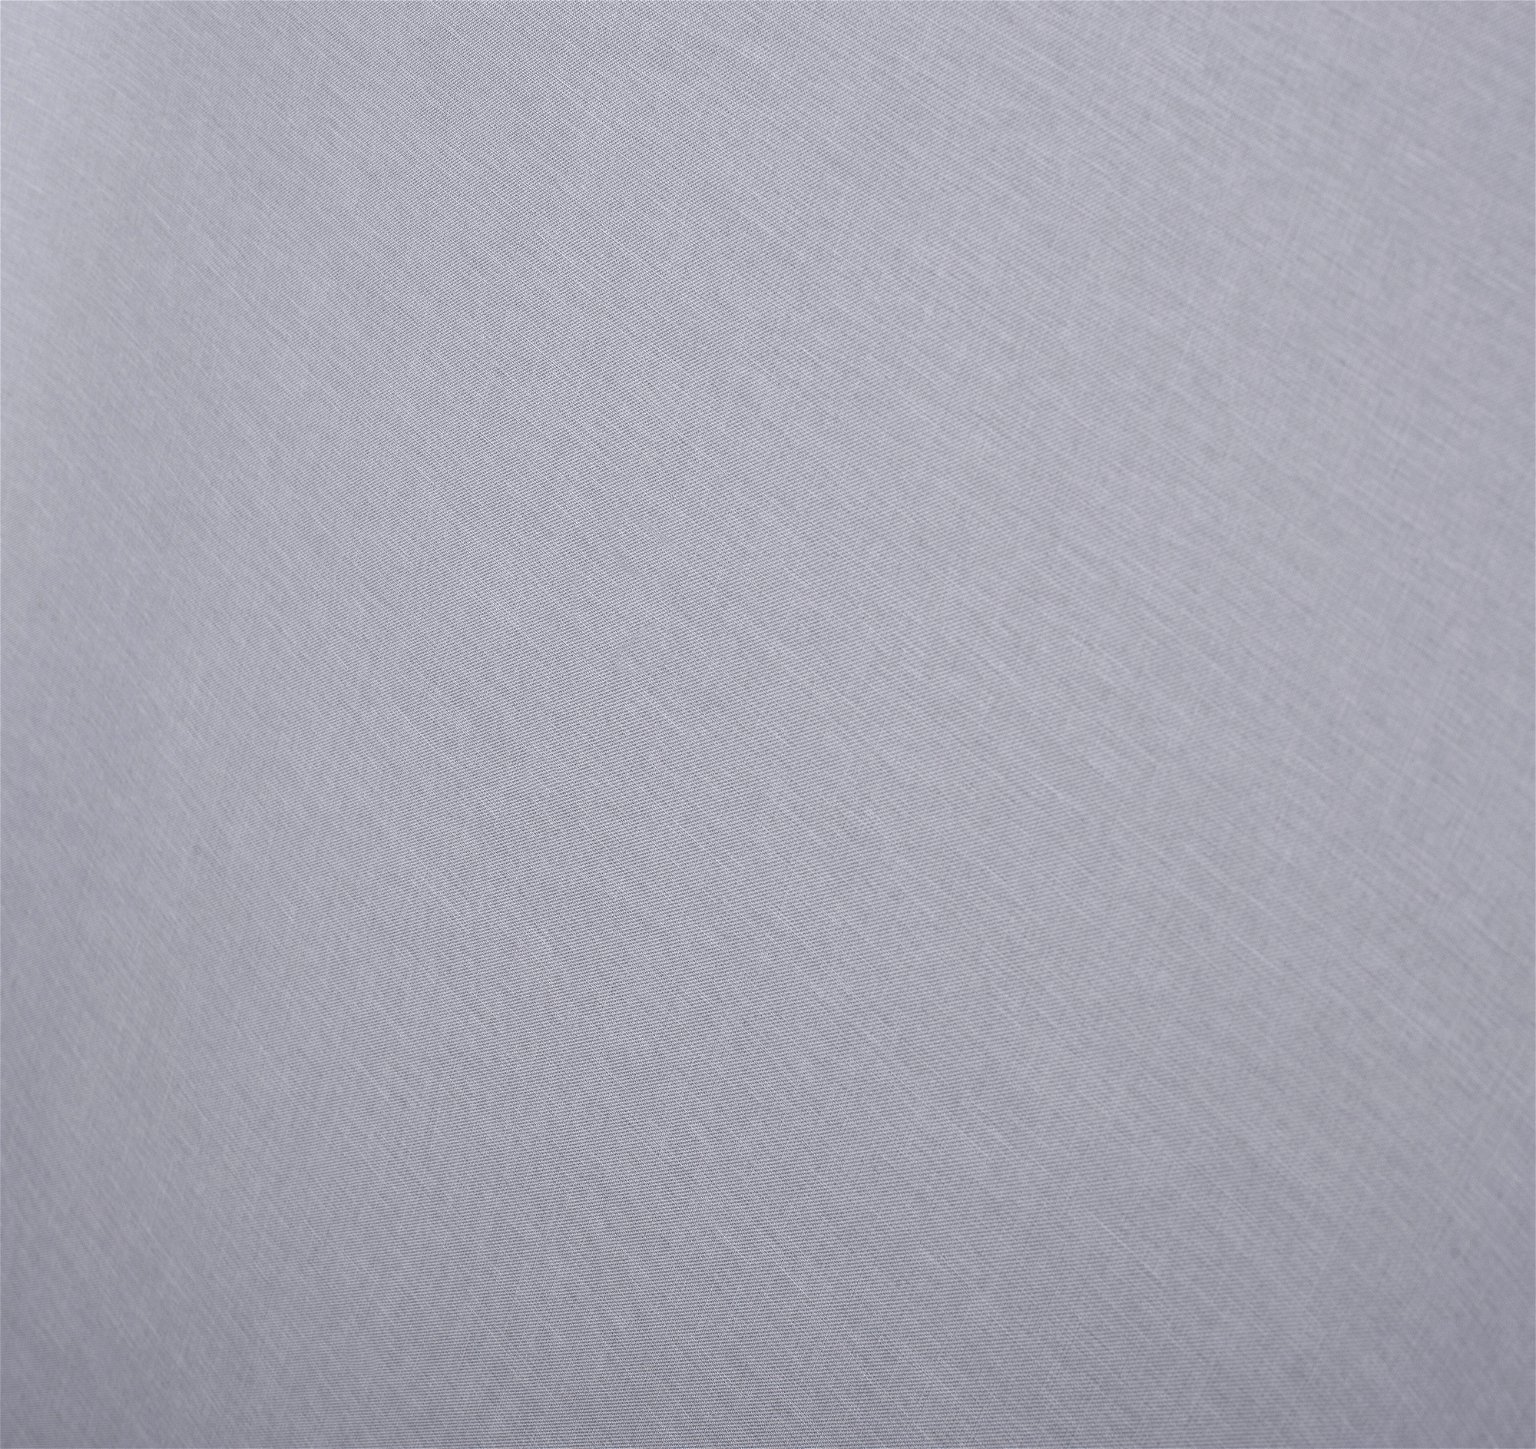 Klasikinė ritininė užuolaida MILAN, šv. pilkos sp., 80 x 170 cm, 100 % poliesteris - 4